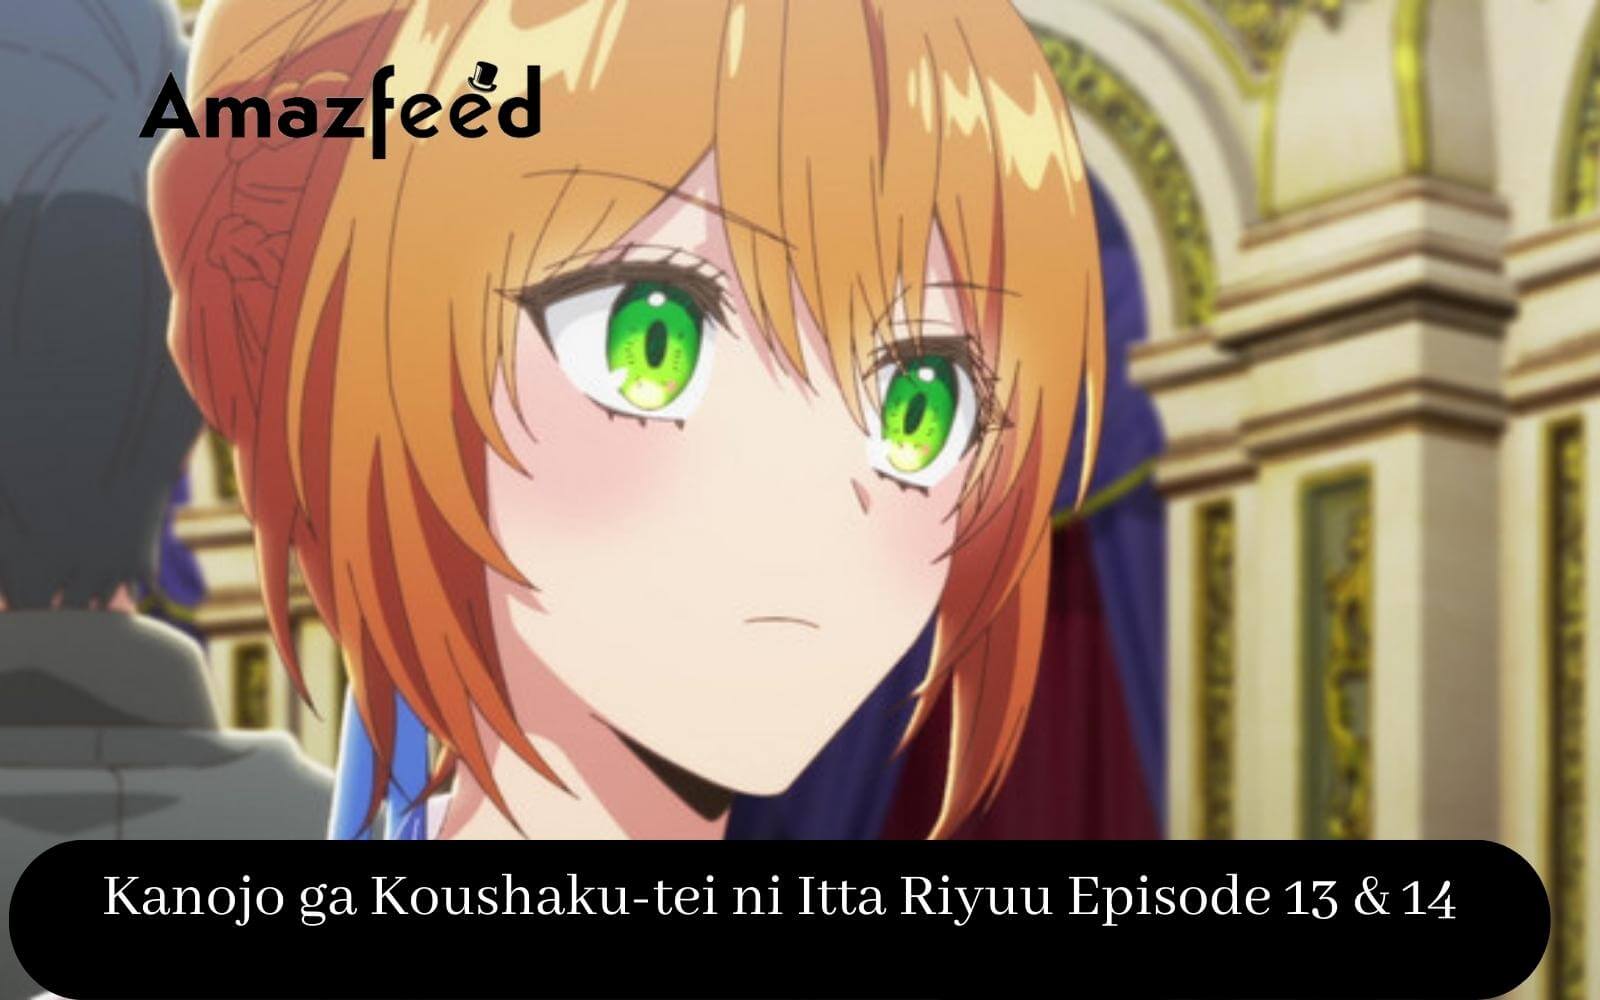 Kanojo ga Koushaku-tei ni Itta Riyuu Episode 8 English Subbed